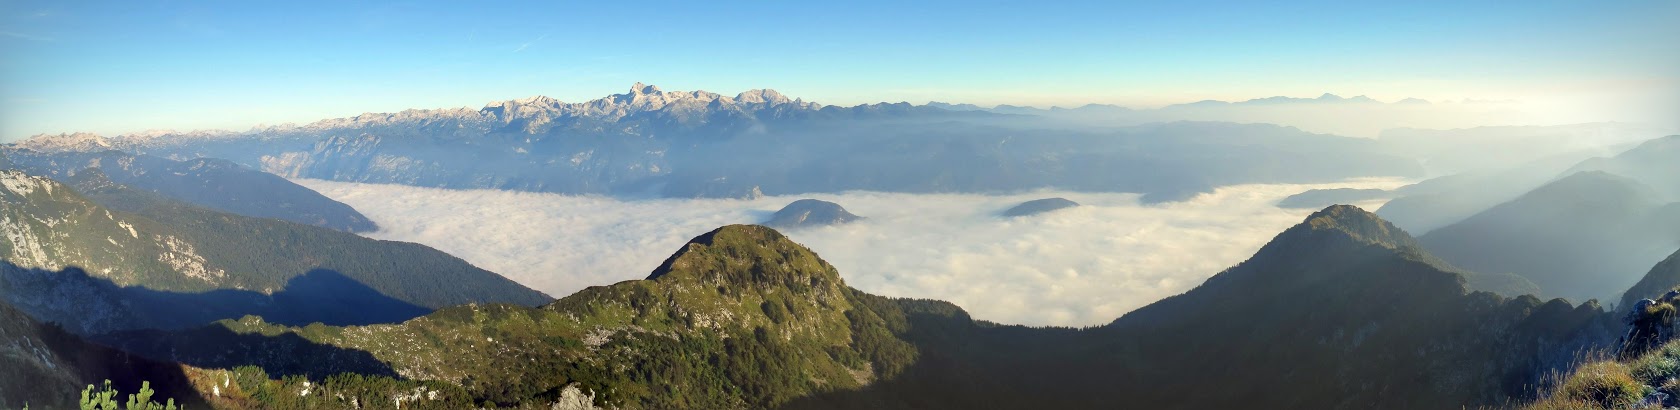  Razgledi po bohinjski dolini na megleno morje in Julijske Alpe so izredni ...